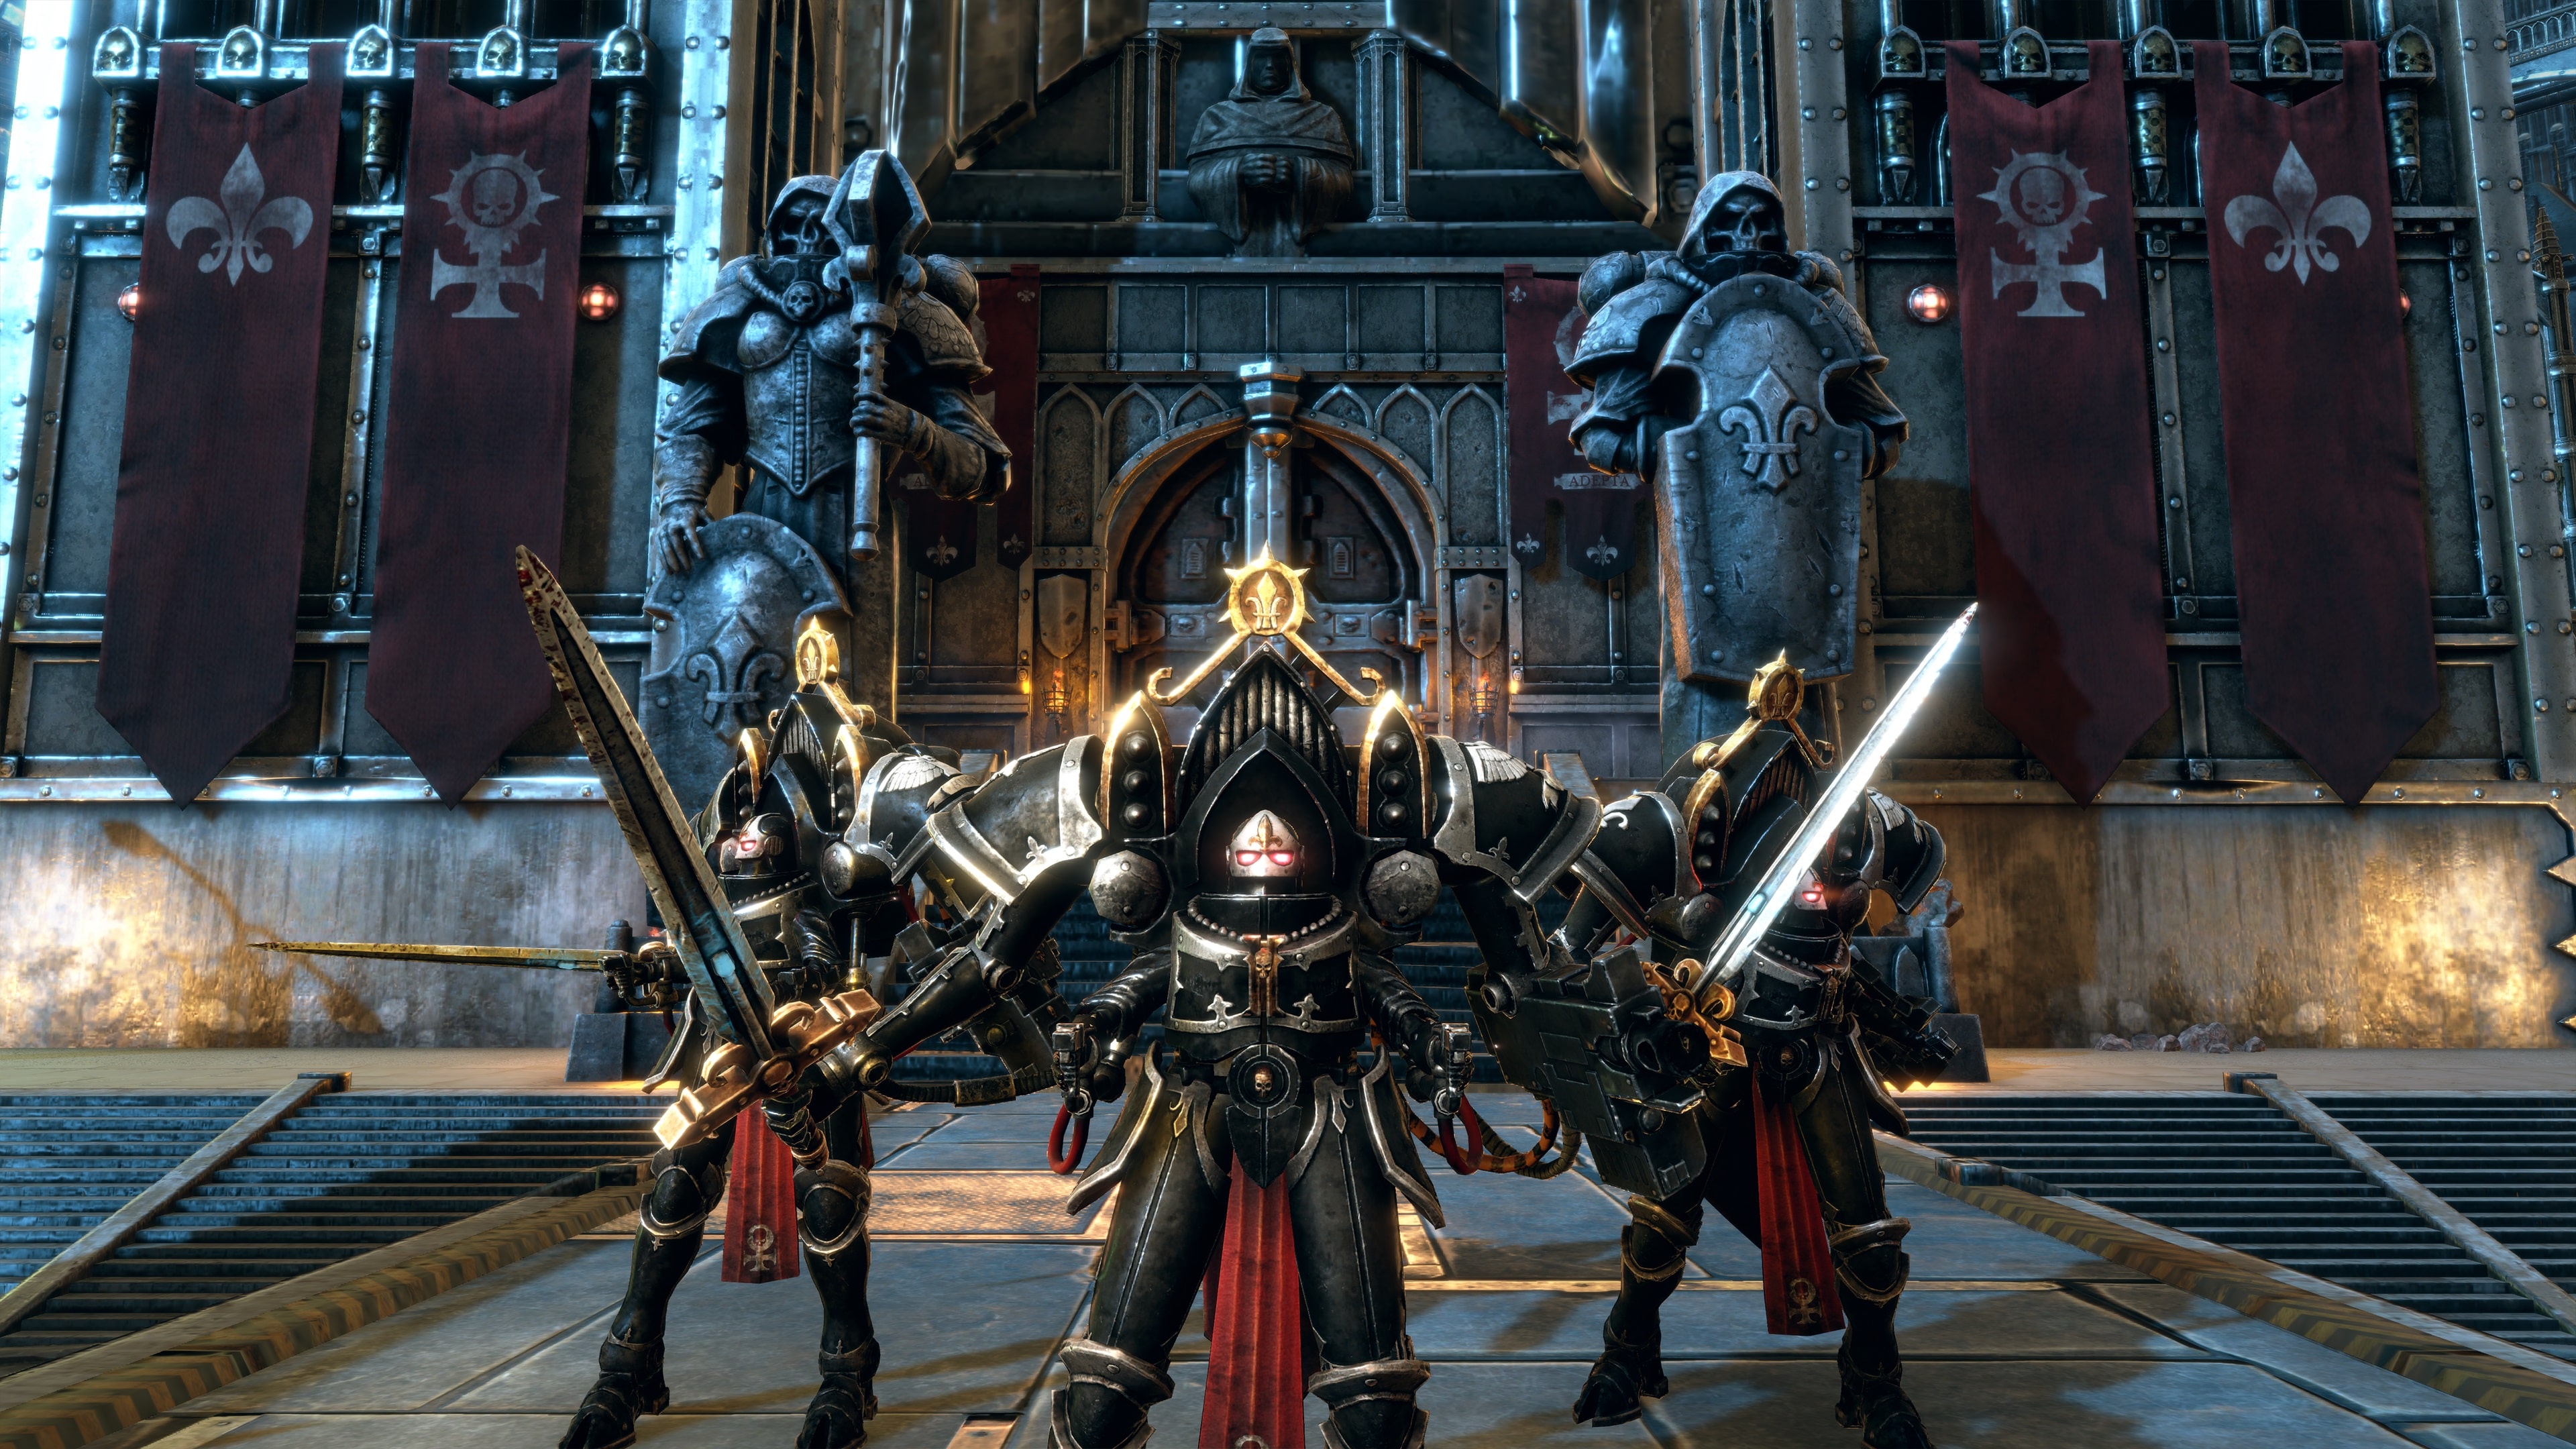 Warhammer 40,000: Battlesector - Tyranid Elite